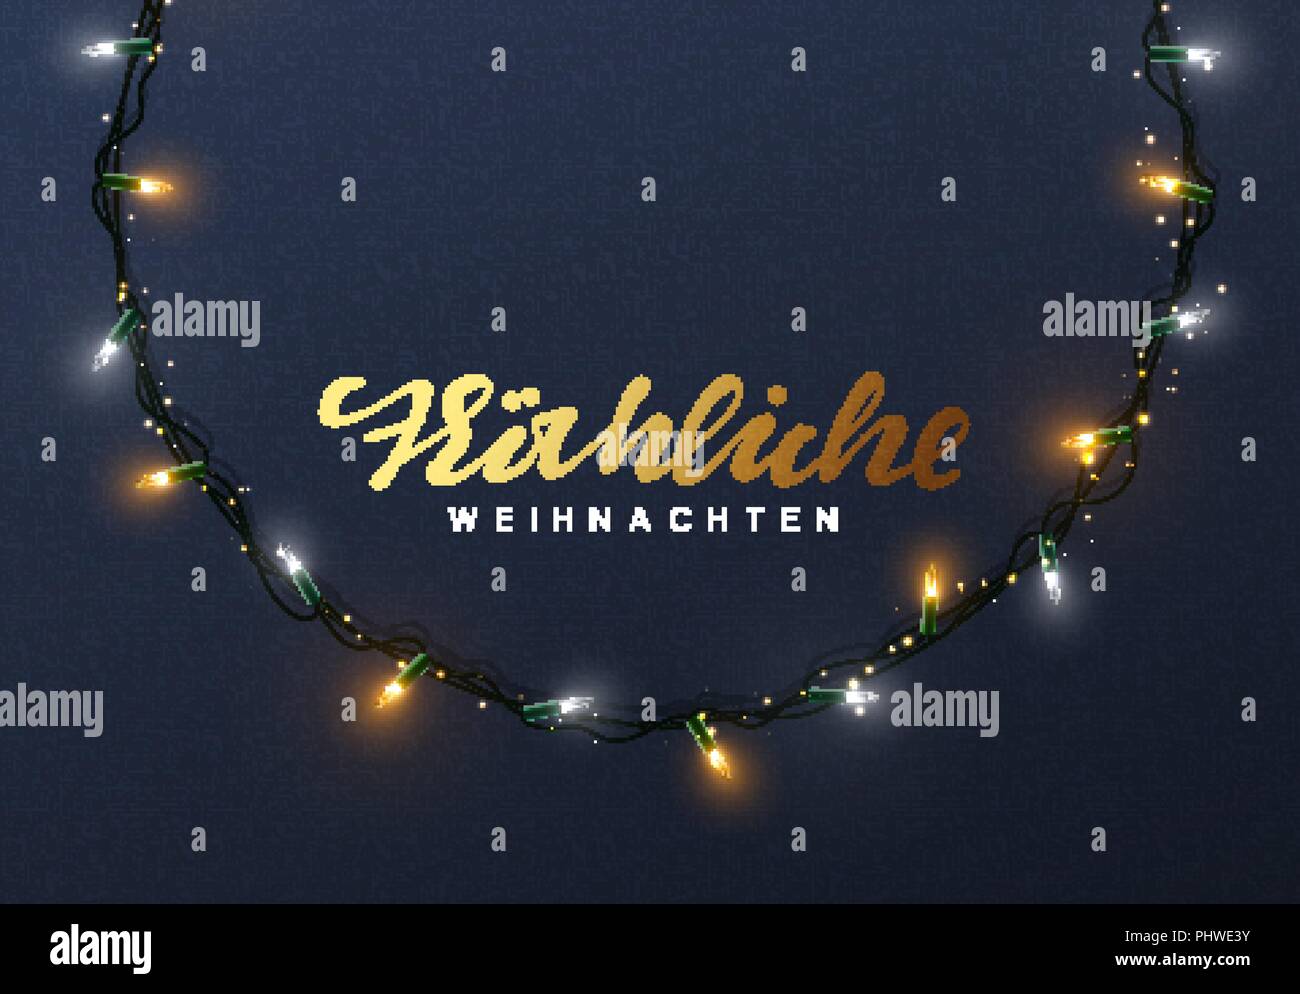 Glühende Weihnachtsbeleuchtung Kranz für Weihnachten Weihnachtskarten Design. Deutsche text Frohliche Weihnachten Stock Vektor